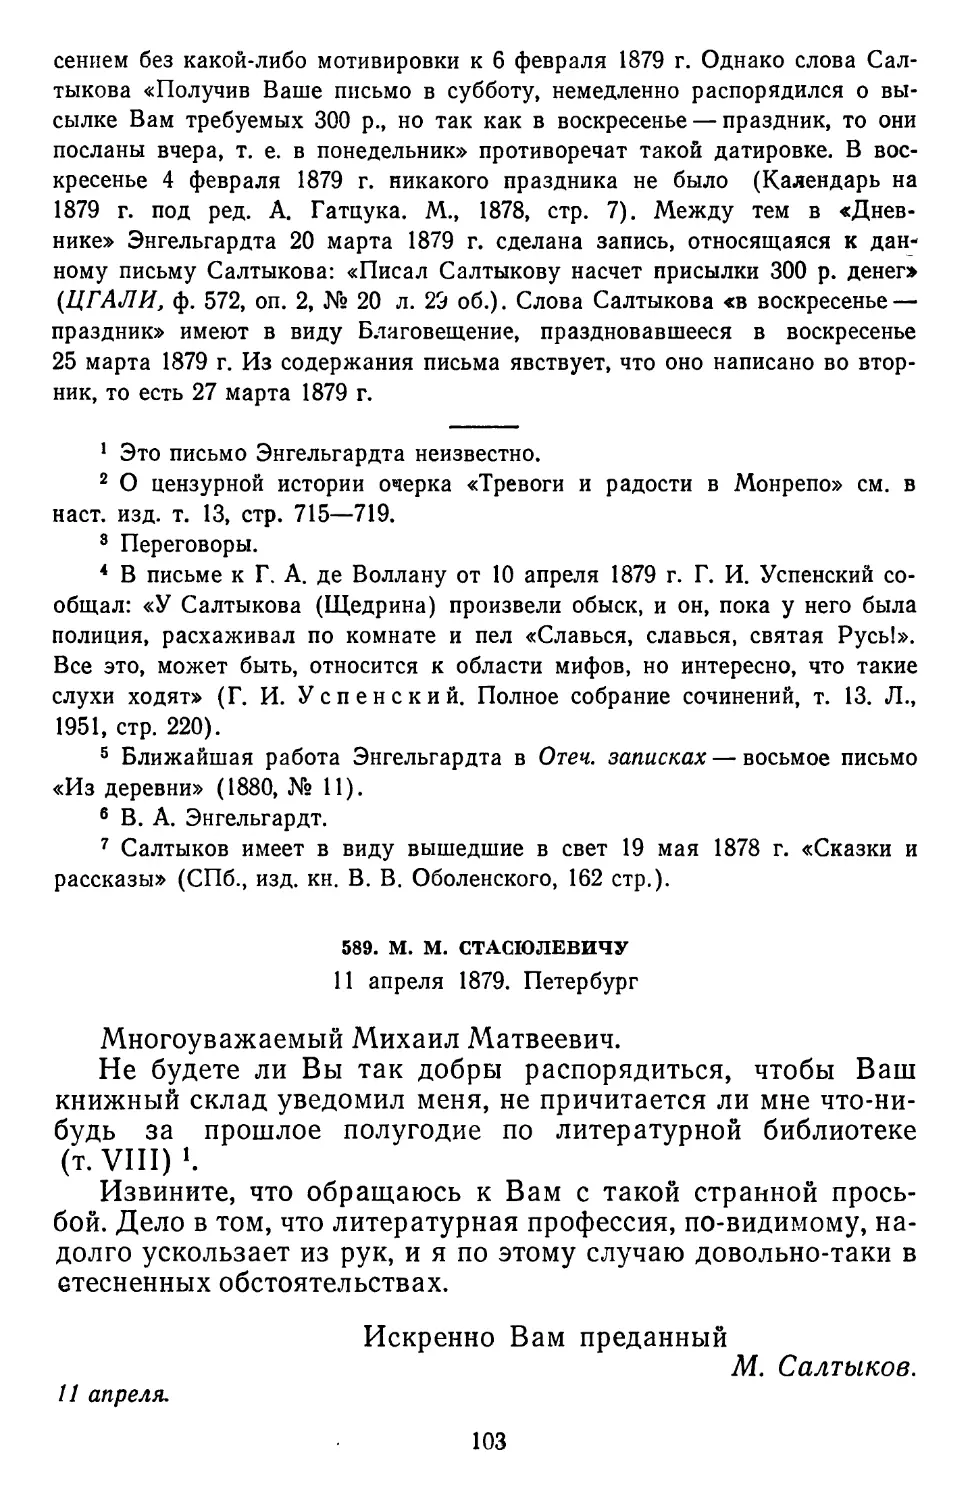 589.М.М. Стасюлевичу. 11 апреля 1879. Петербург